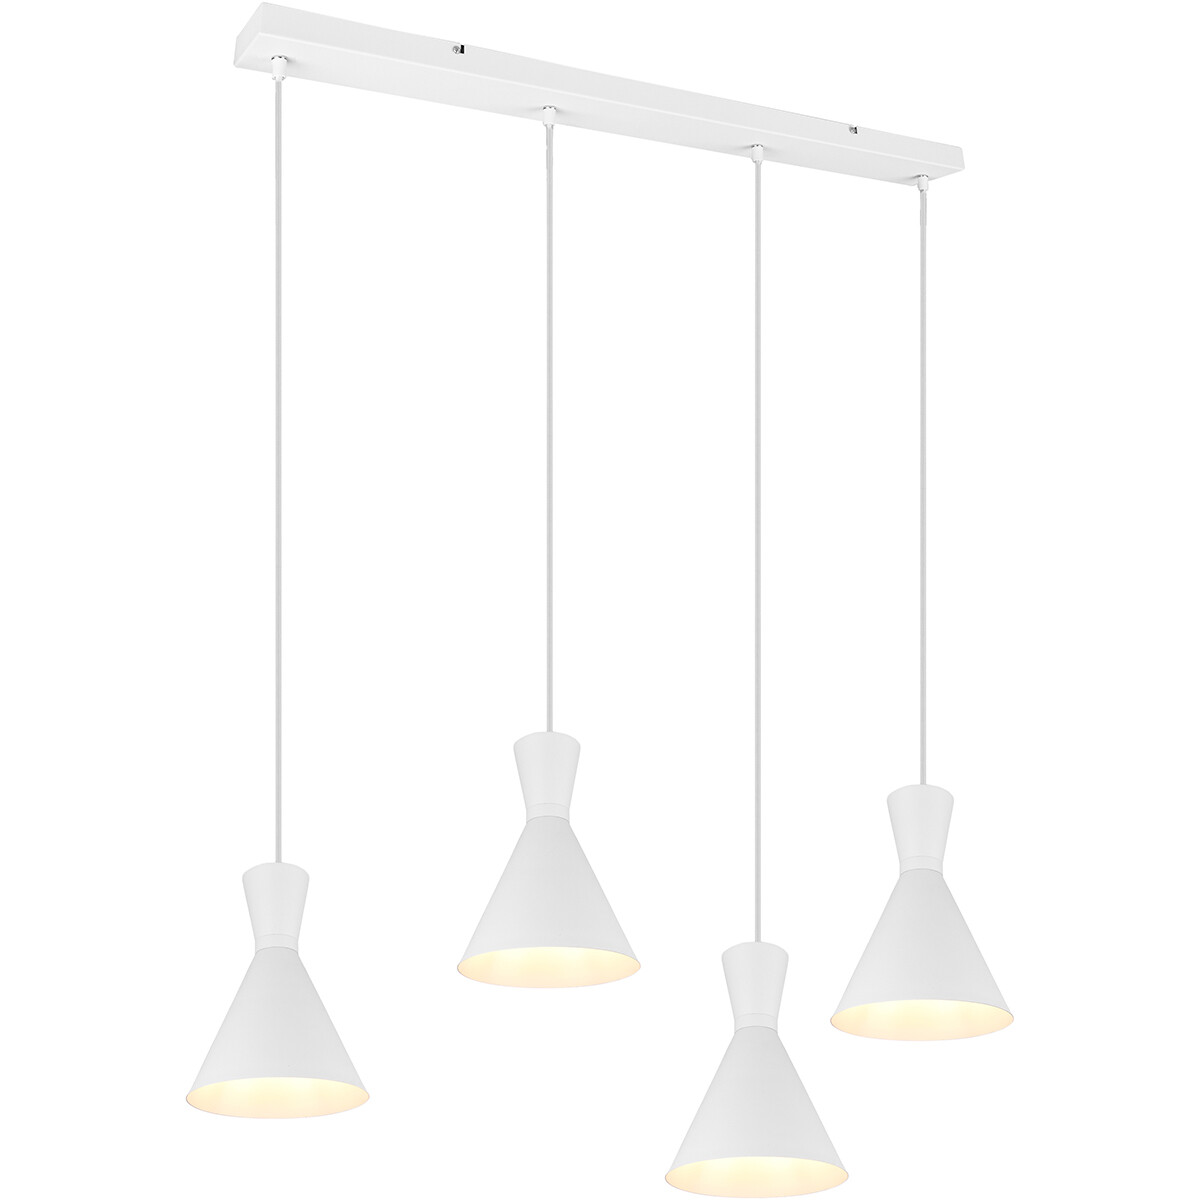 LED Hanglamp Trion Ewomi E27 Fitting 4-lichts Rechthoek Mat Wit Aluminium